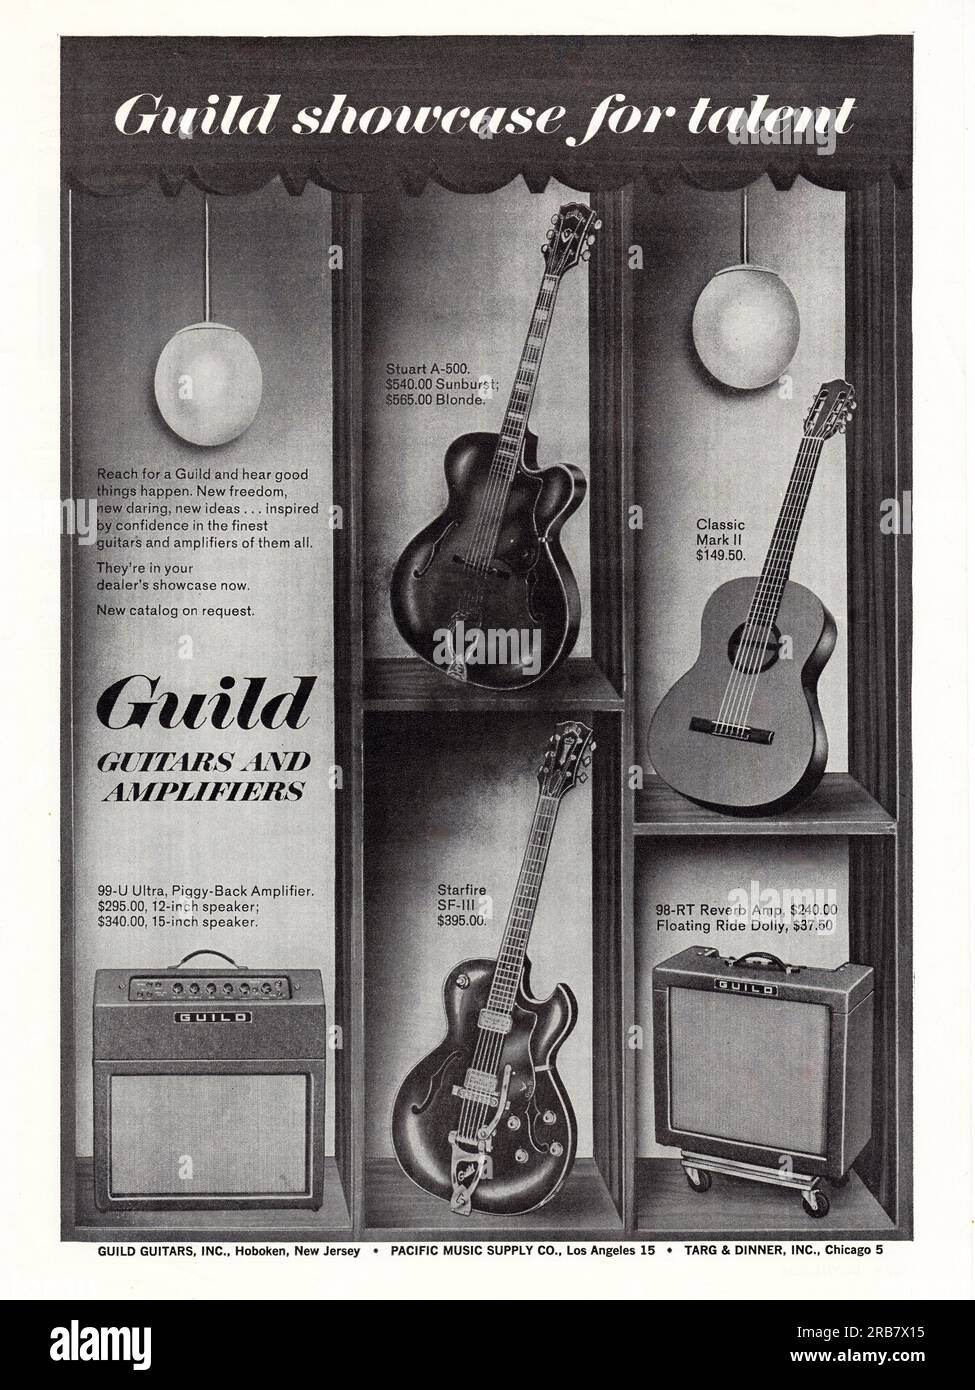 Une publicité pleine mage pour guitares et amplificateurs Guild. d'un magazine de musique du début des années 1960. Banque D'Images